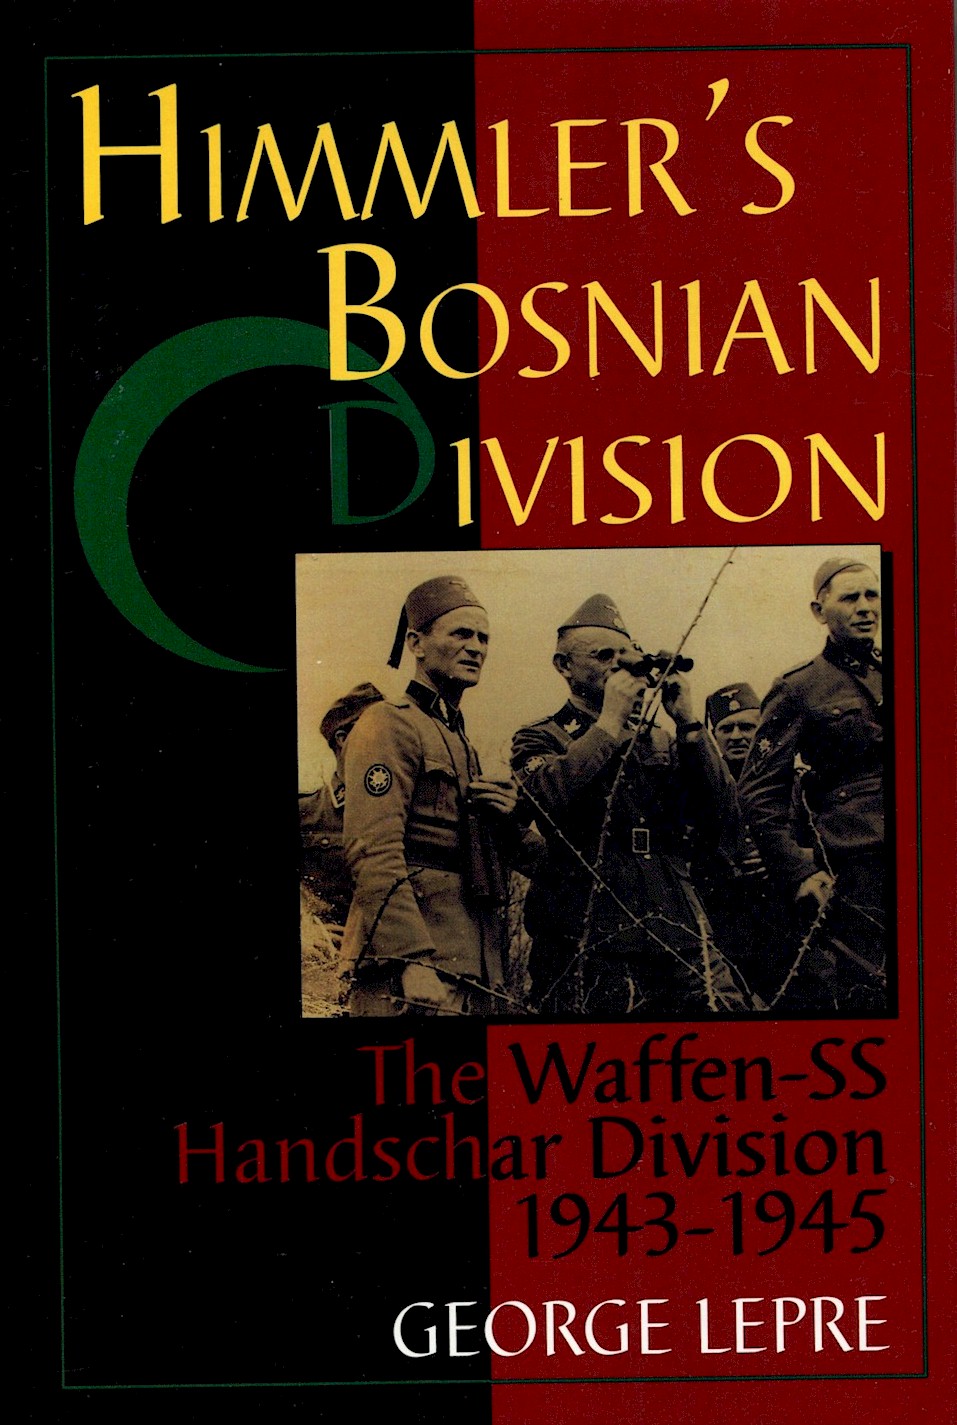 HIMMLER'S BOSNIAN DIVISION: THE WAFFEN-SS HANDSCHAR DIVISION 1943-1945 